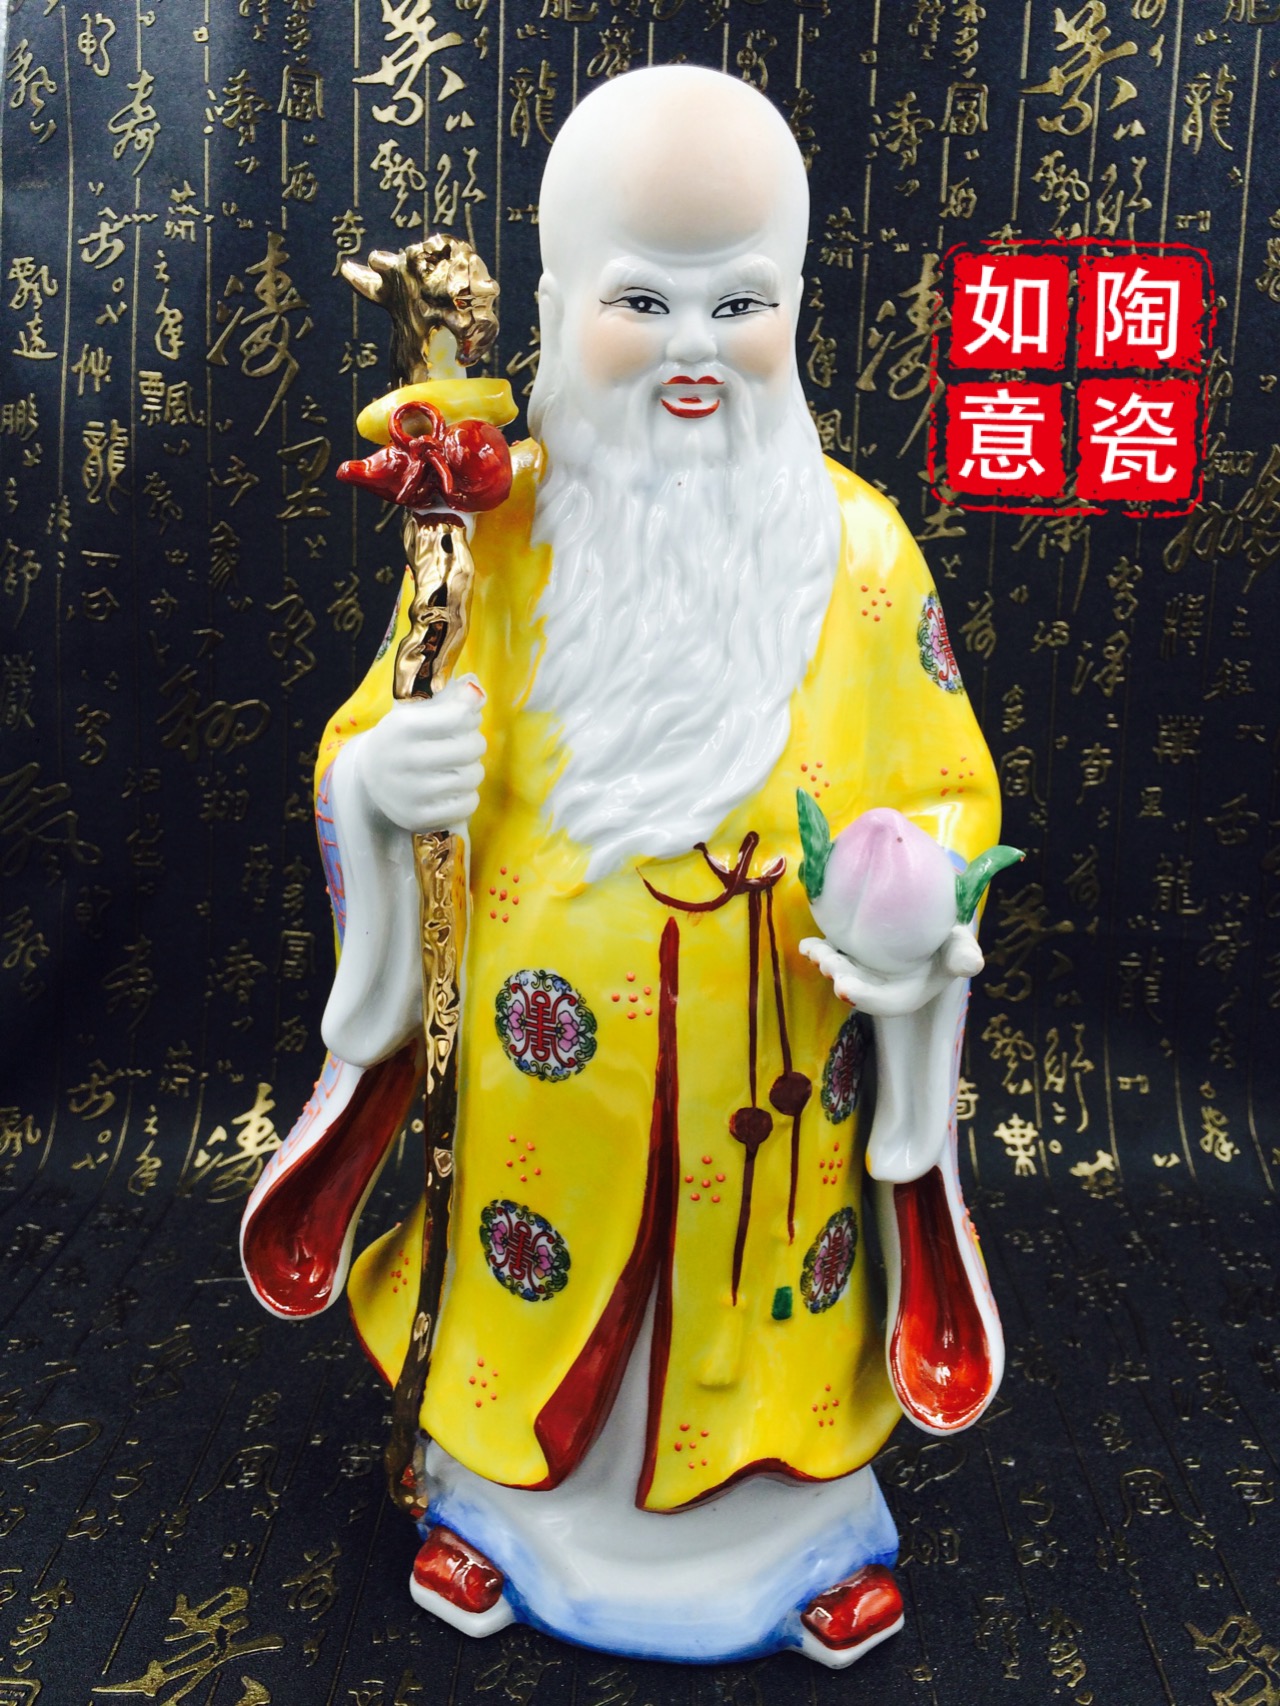 寿星公陶瓷神像南极老人星佛像寿佳礼献寿老寿星贺寿供奉家居摆件